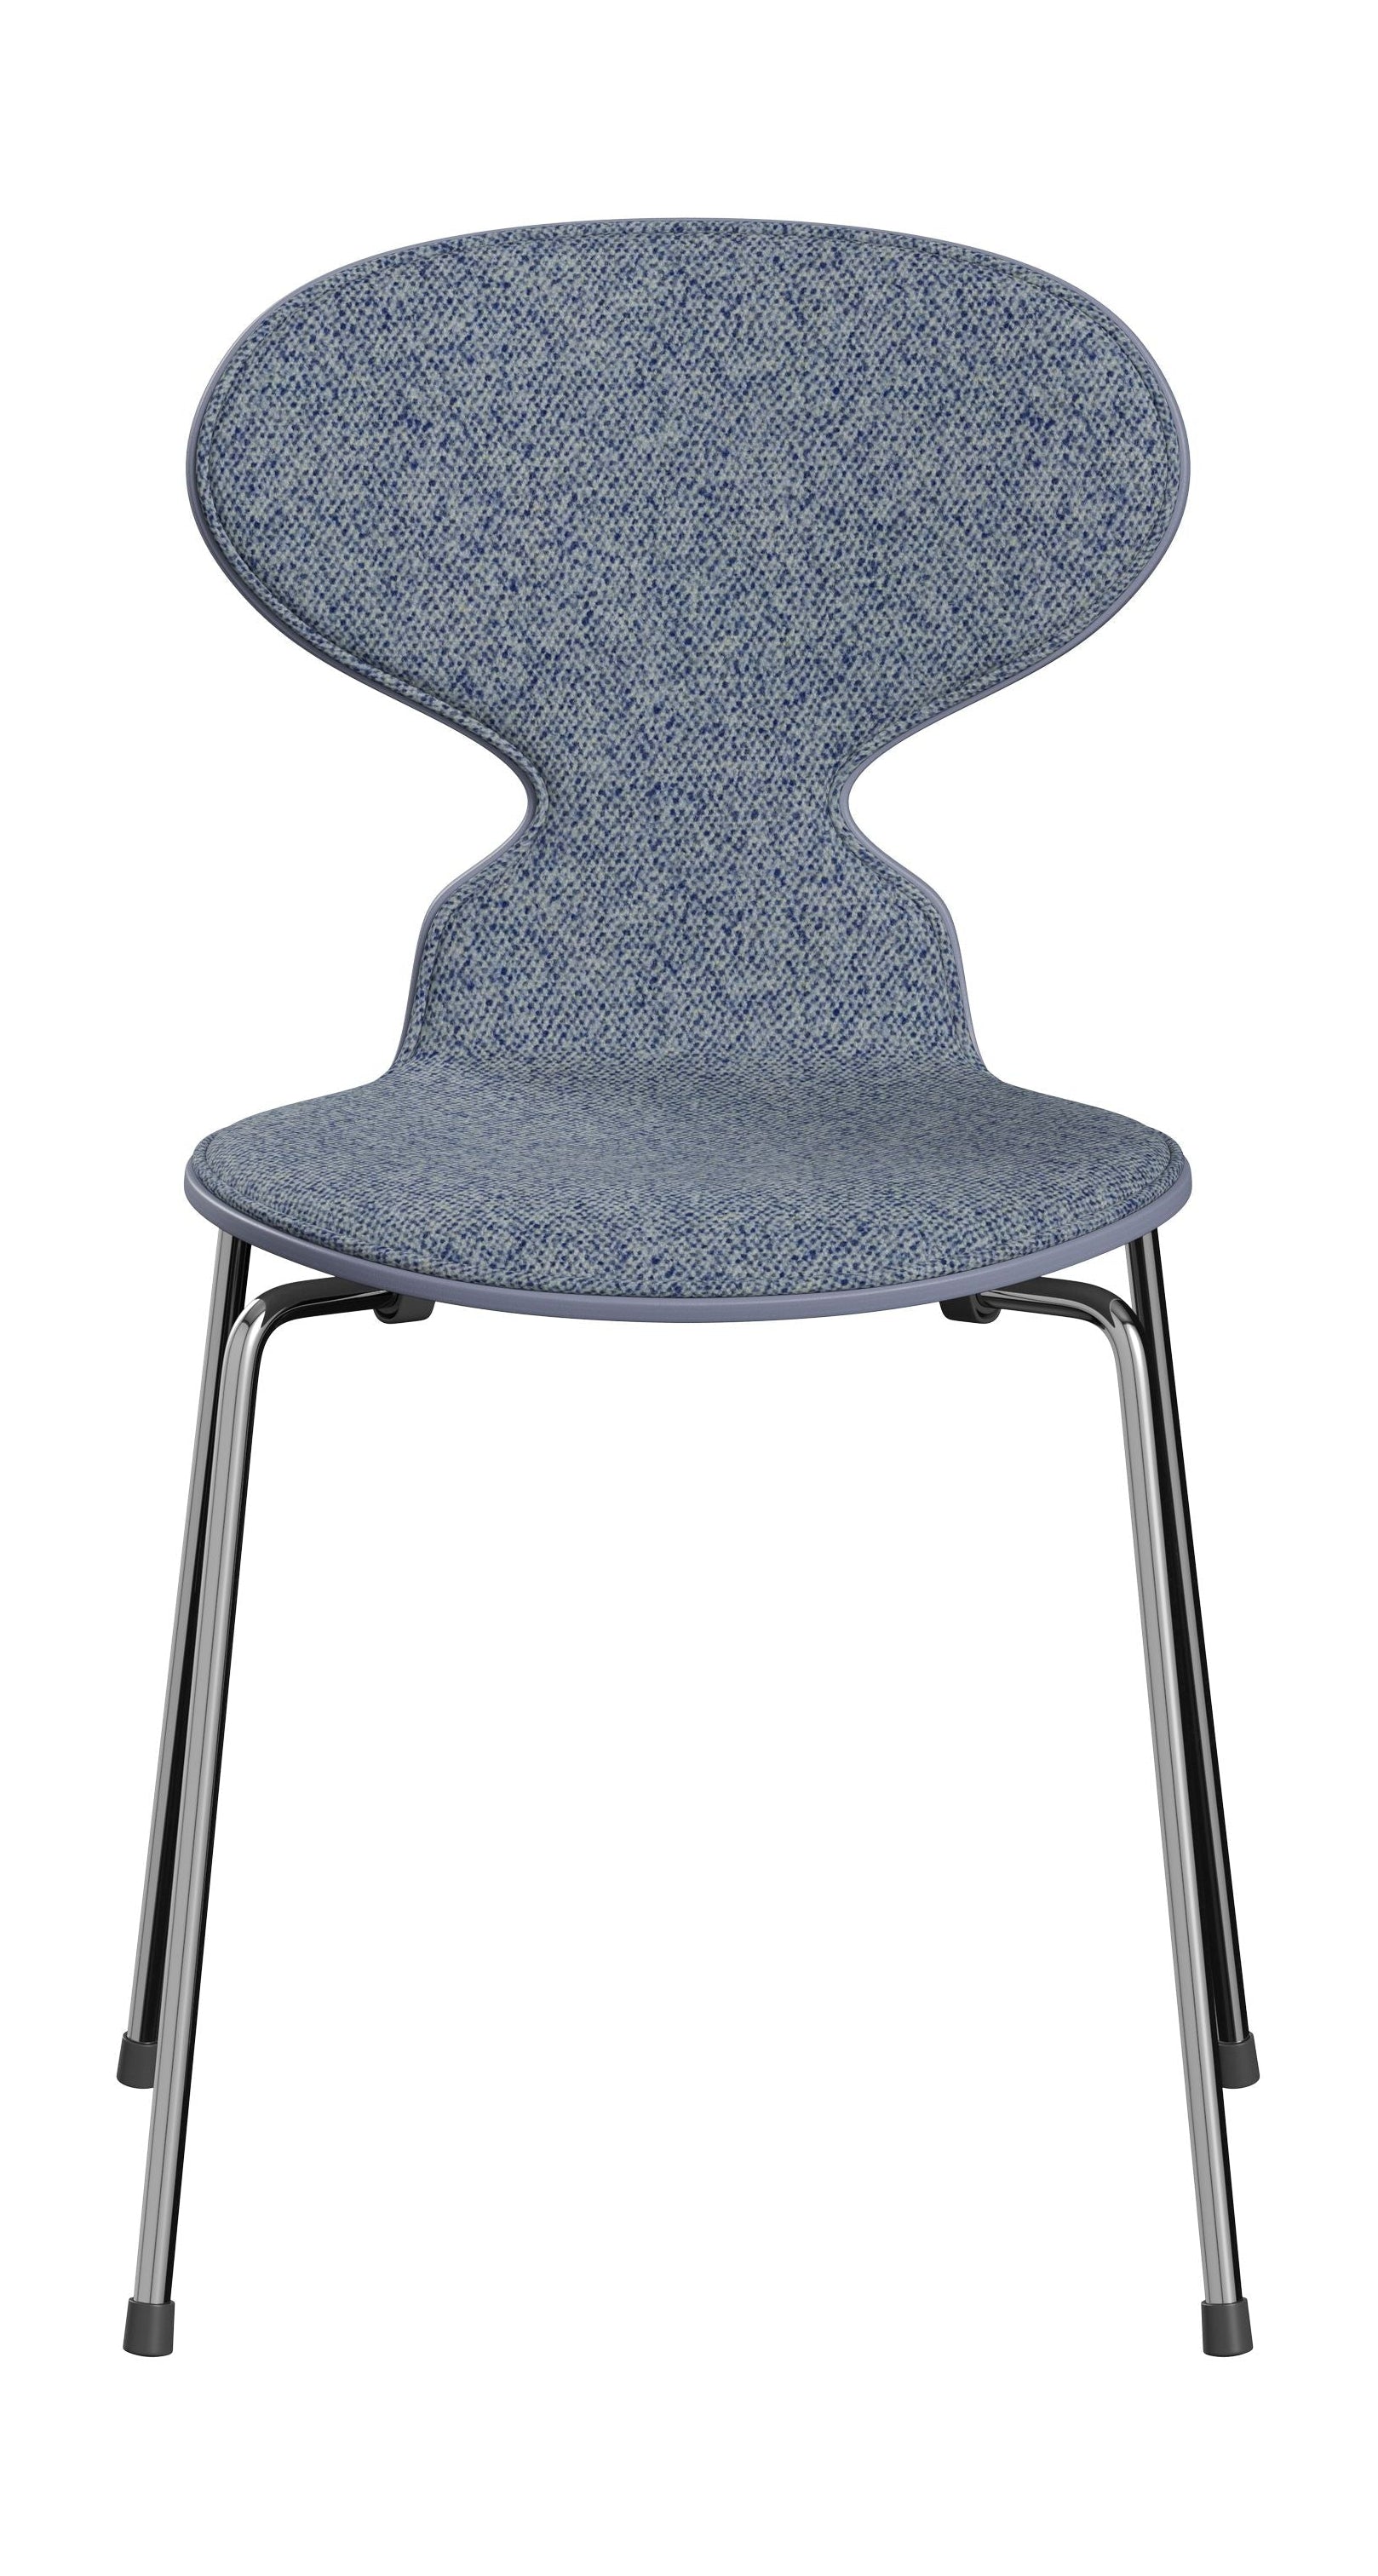 Fritz Hansen 3101 chaise fourmi avant rembourré, coquille: placage coloré bleu lavande, rembourrage: vanir textile bleu clair, base: acier / chrome